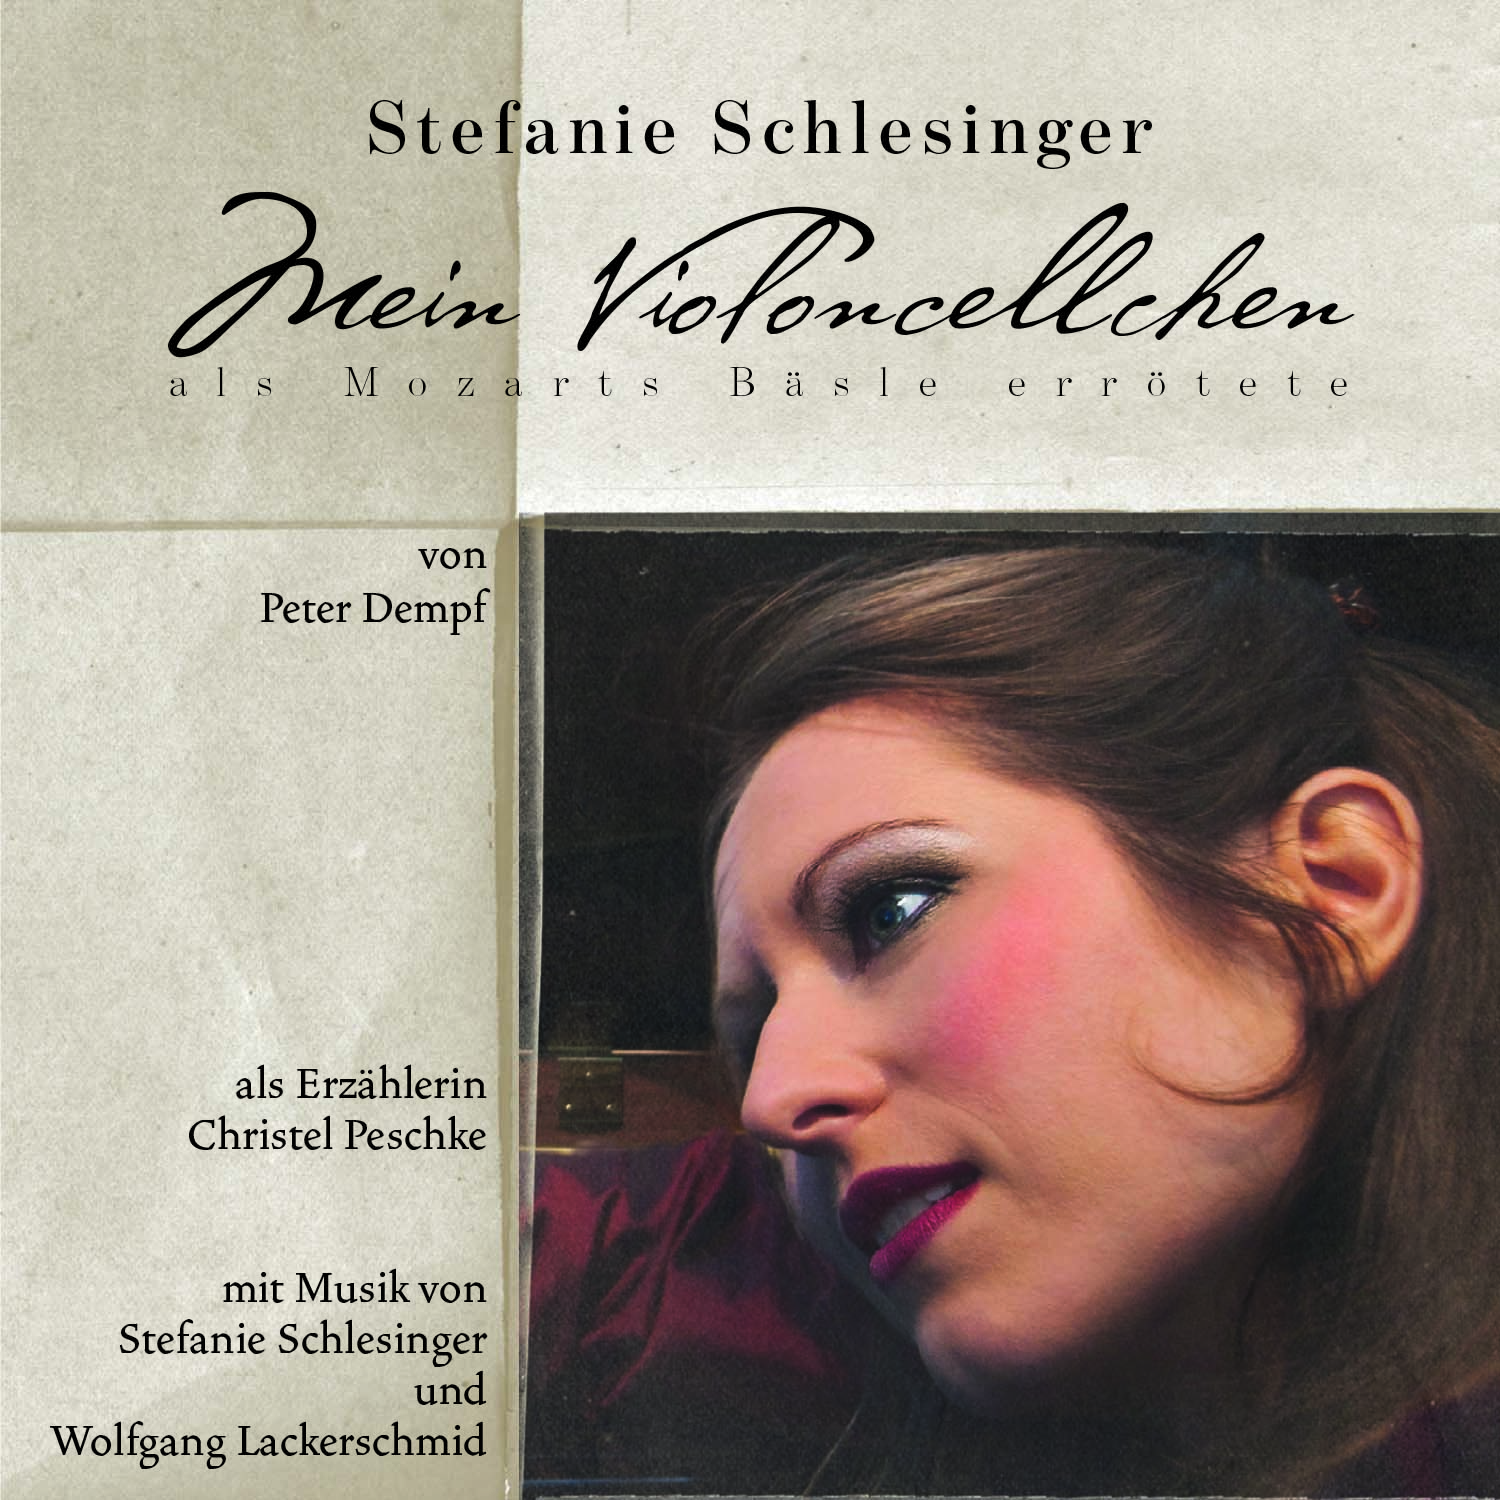 STEFANIE SCHLESINGER - Mein Violoncellchen (als Mozarts Bäsle errötete) cover 